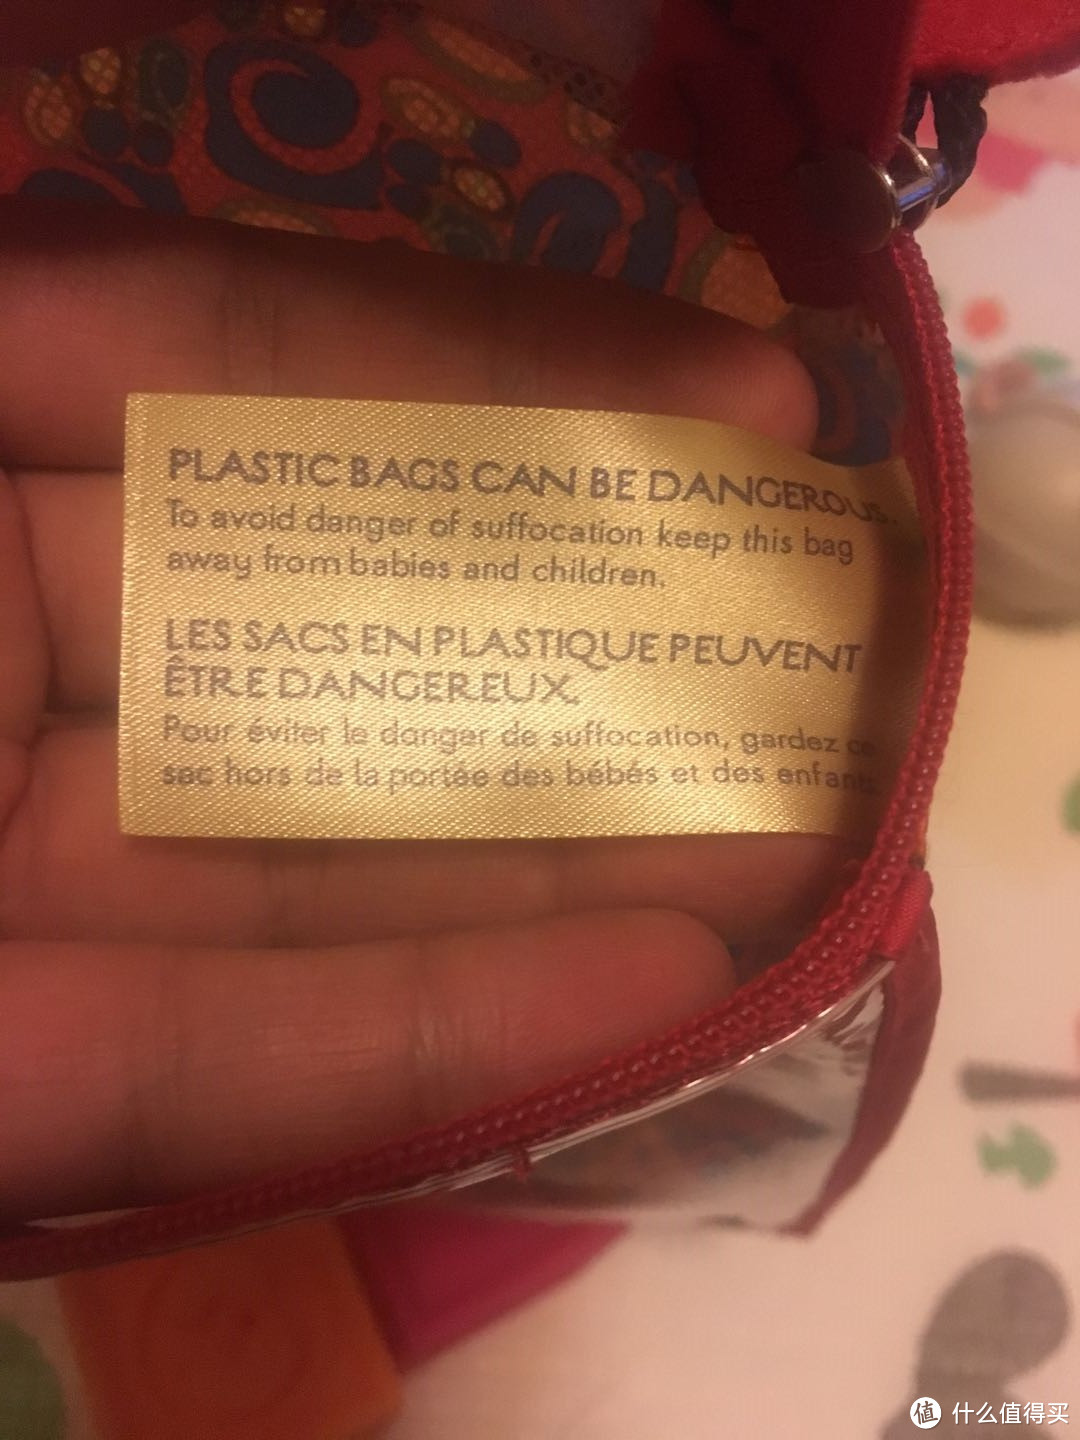 “塑料袋也可能是危险的，为了防止危险请将塑料袋远离孩子”，这是袋子内侧的小提示，看出玩具厂家的严谨与人性化